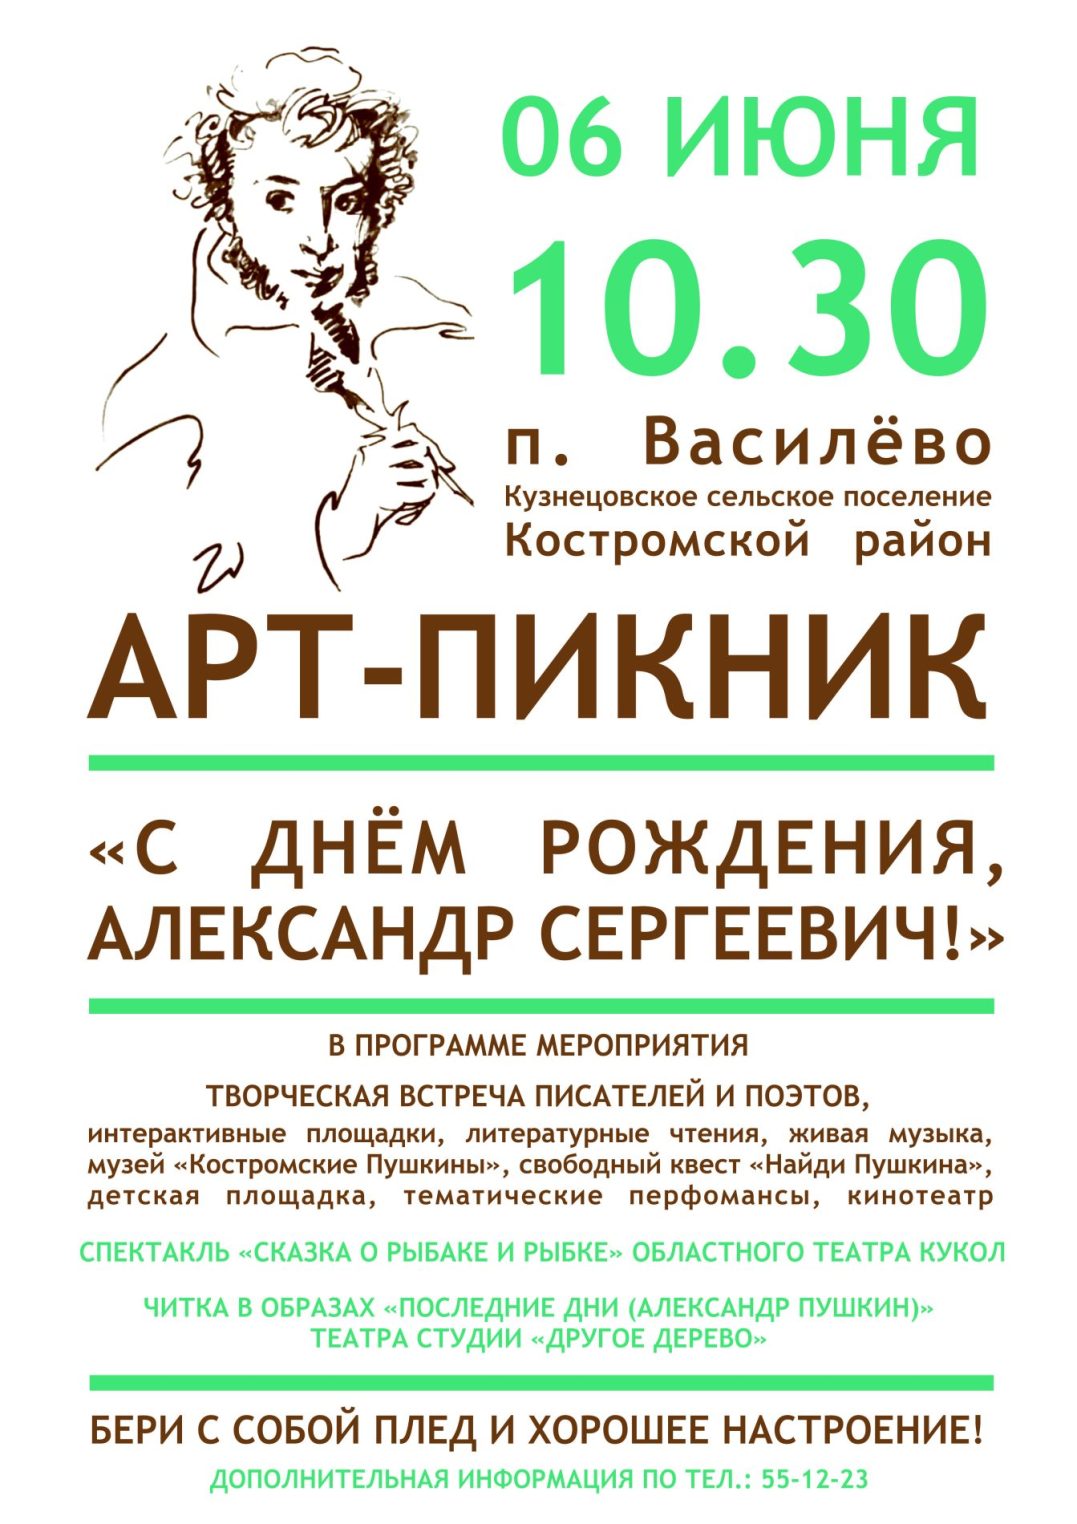 Костромичей приглашают на Пушкинский праздник